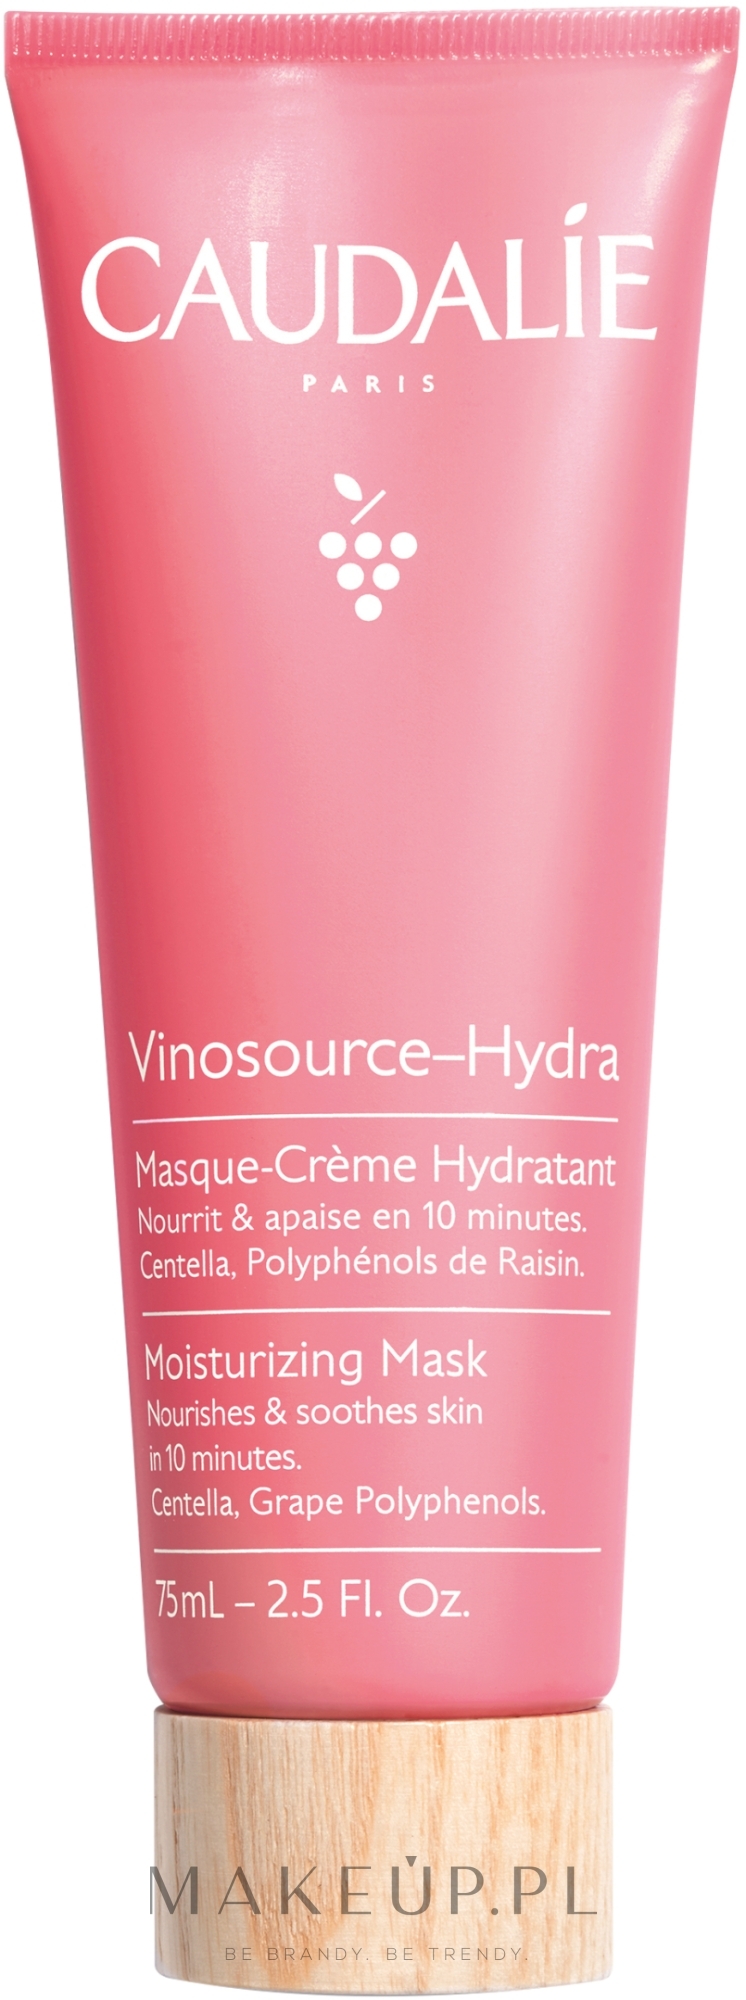 Kremowa maseczka do twarzy intensywnie nawilżająca - Caudalie Vinosource-Hydra Moisturizing Mask — Zdjęcie 75 ml